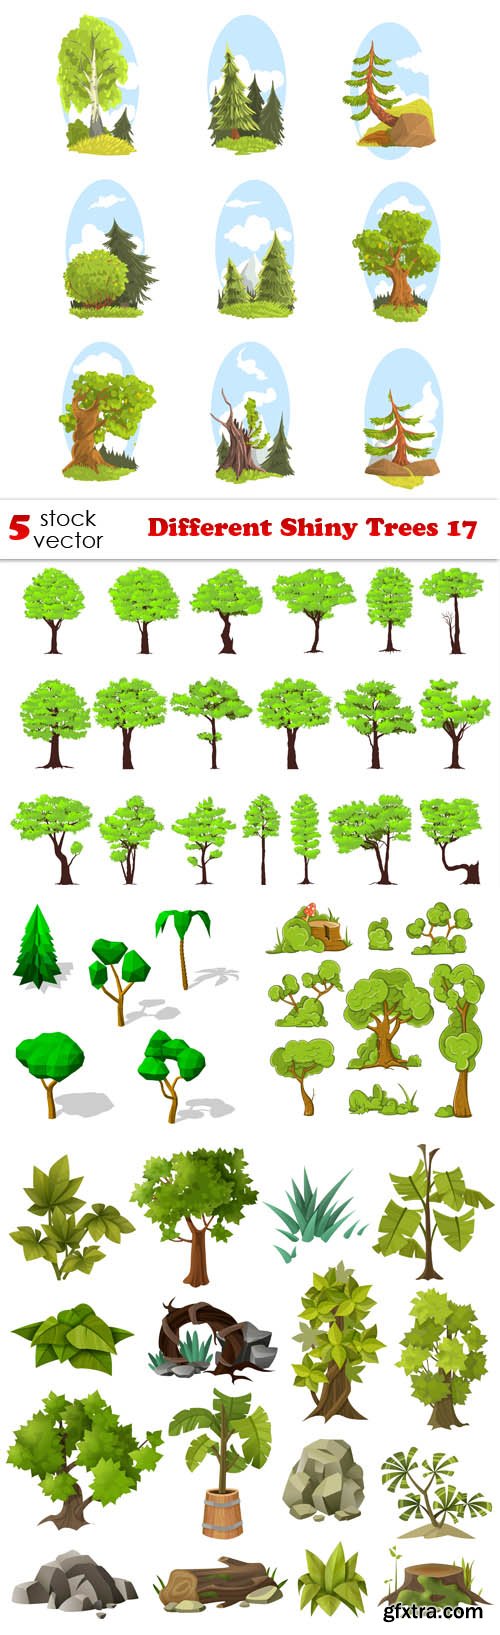 Vectors - Different Shiny Trees 17